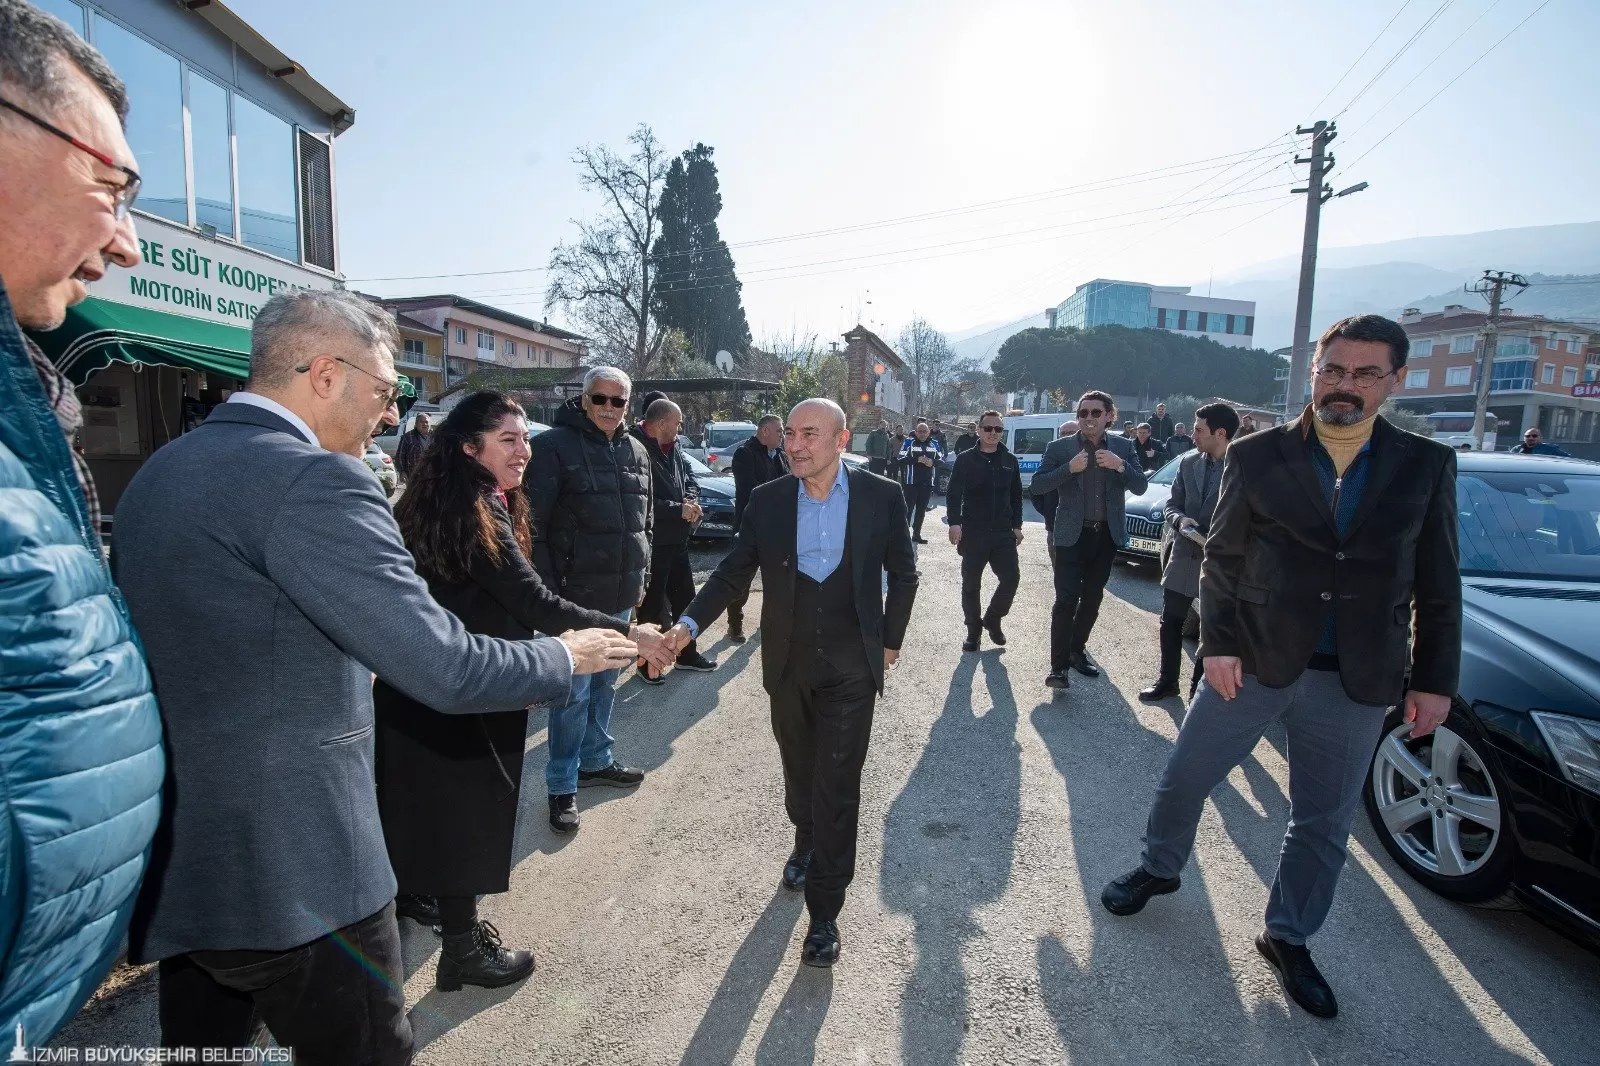 İzmir Büyükşehir Belediye Başkanı Tunç Soyer, görev süresi boyunca desteklerini esirgemeyen İzmirlilere teşekkür etmek amacıyla Tire Süt Kooperatifi'ni ziyaret etti.